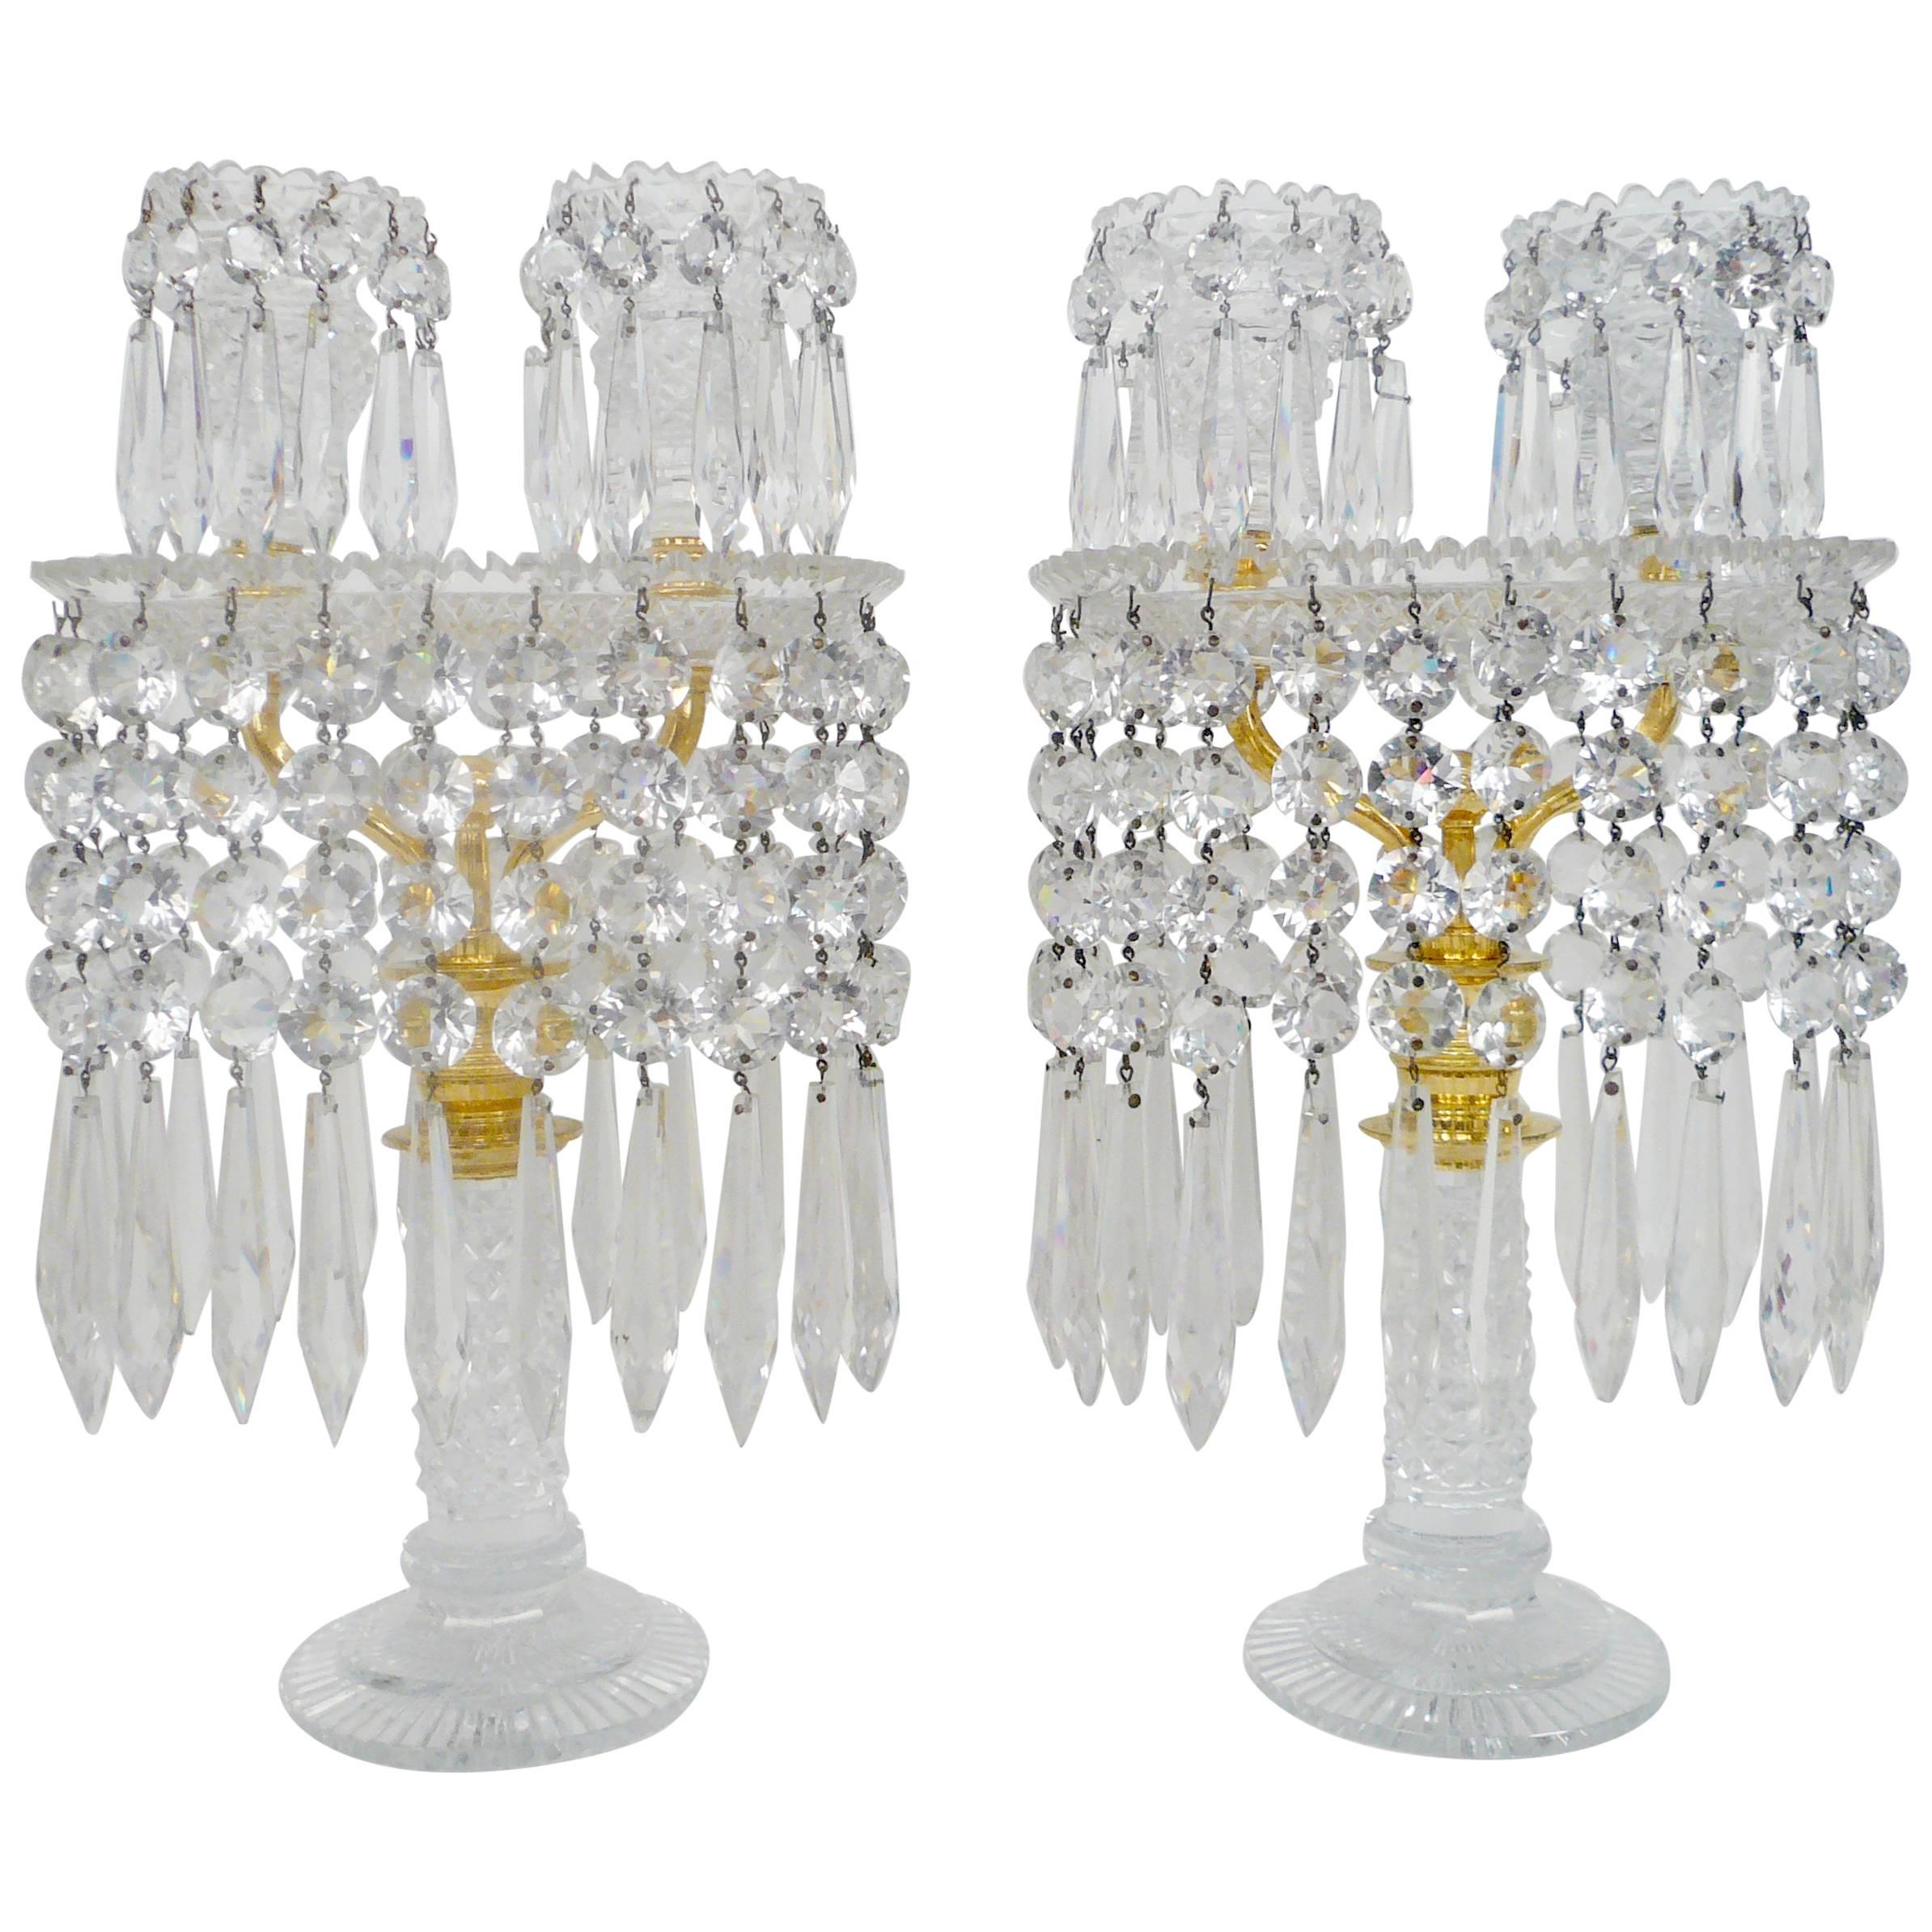 Pareja de candelabros ingleses de vidrio tallado de la Regencia, atribuidos a John Blades